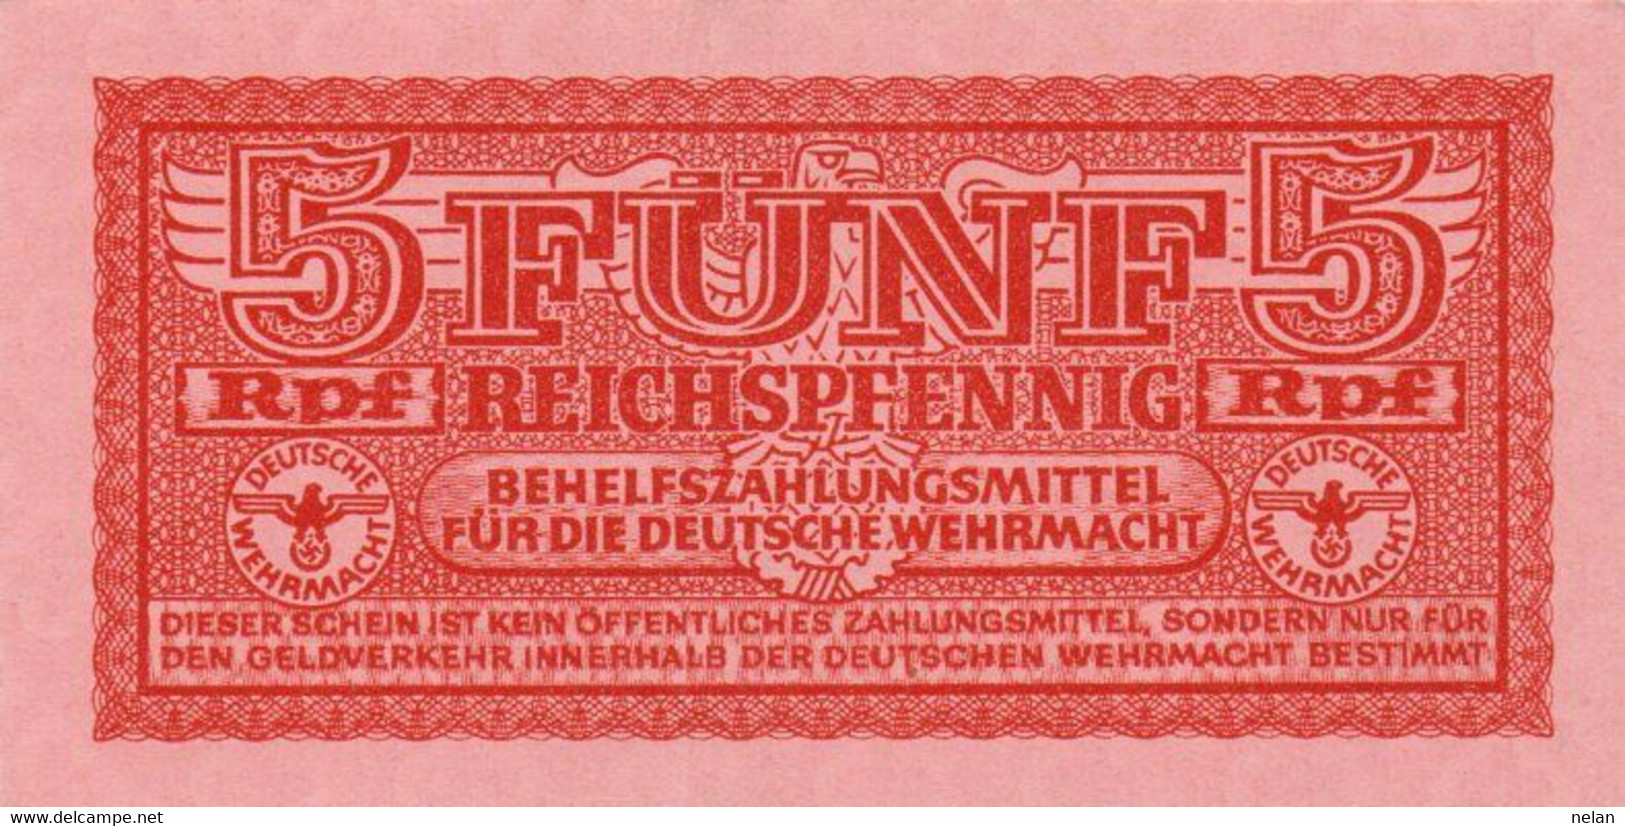 GERMANY- 5 REICHSFENNIG 1942 **World Paper Money P-M33 Rosenberg R-502 - XF++ - Military Payment Certificates - Behelfszahlungsmittel - Dt. Wehrmacht